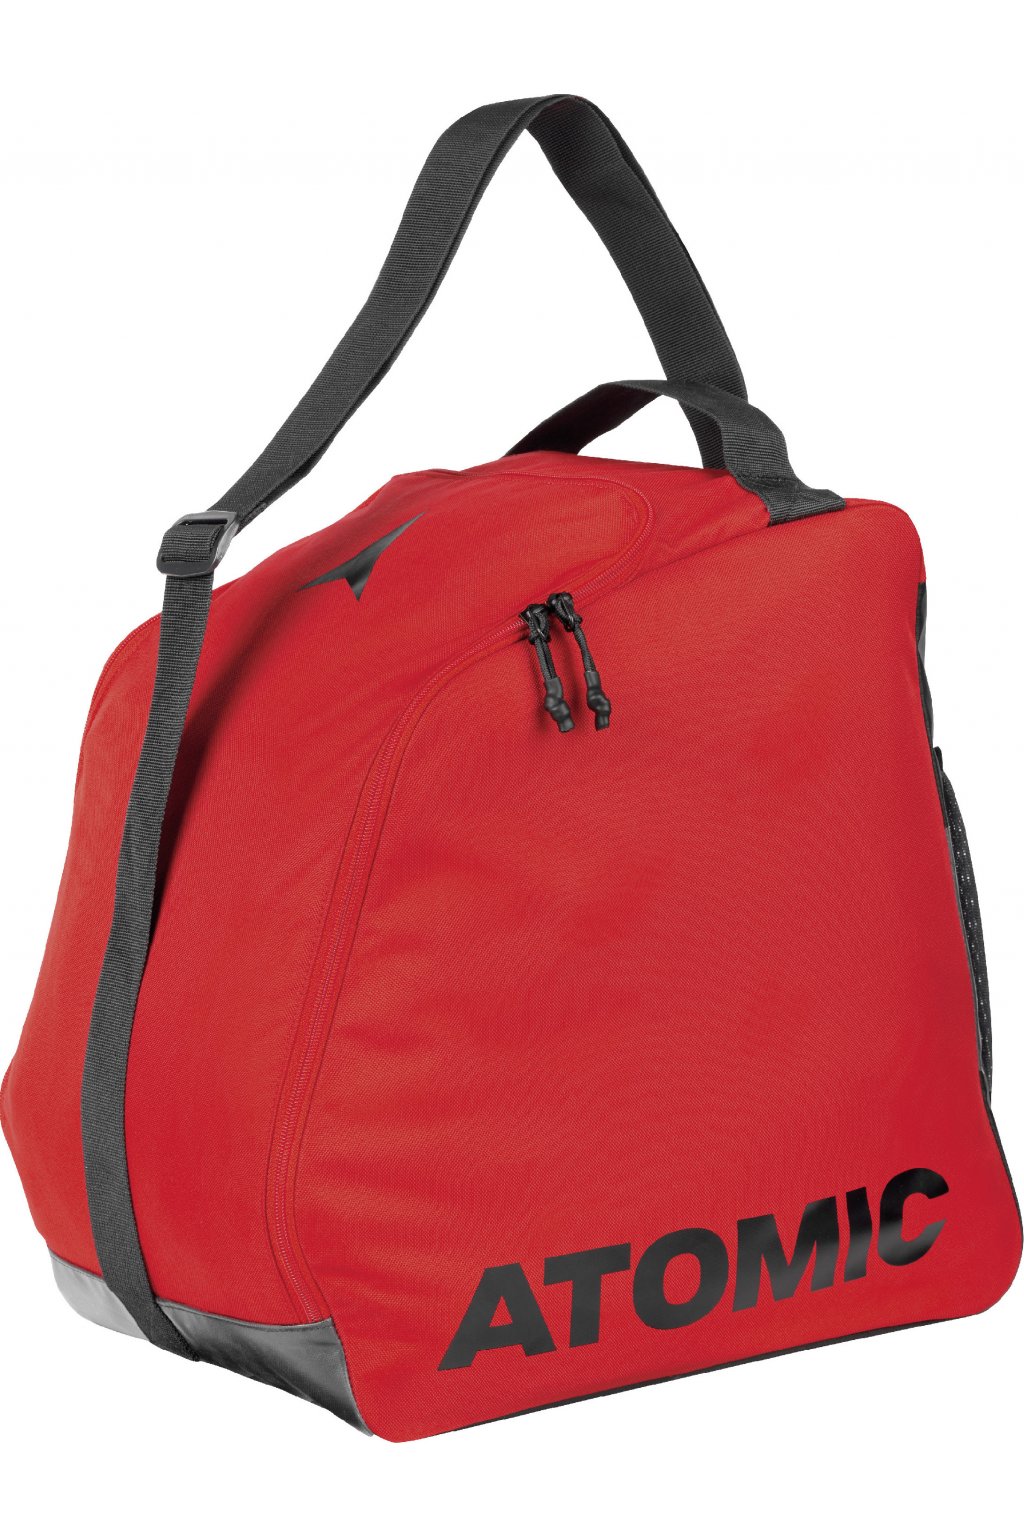 Atomic vak Boot Bag 2.0 red Velikost: UNI